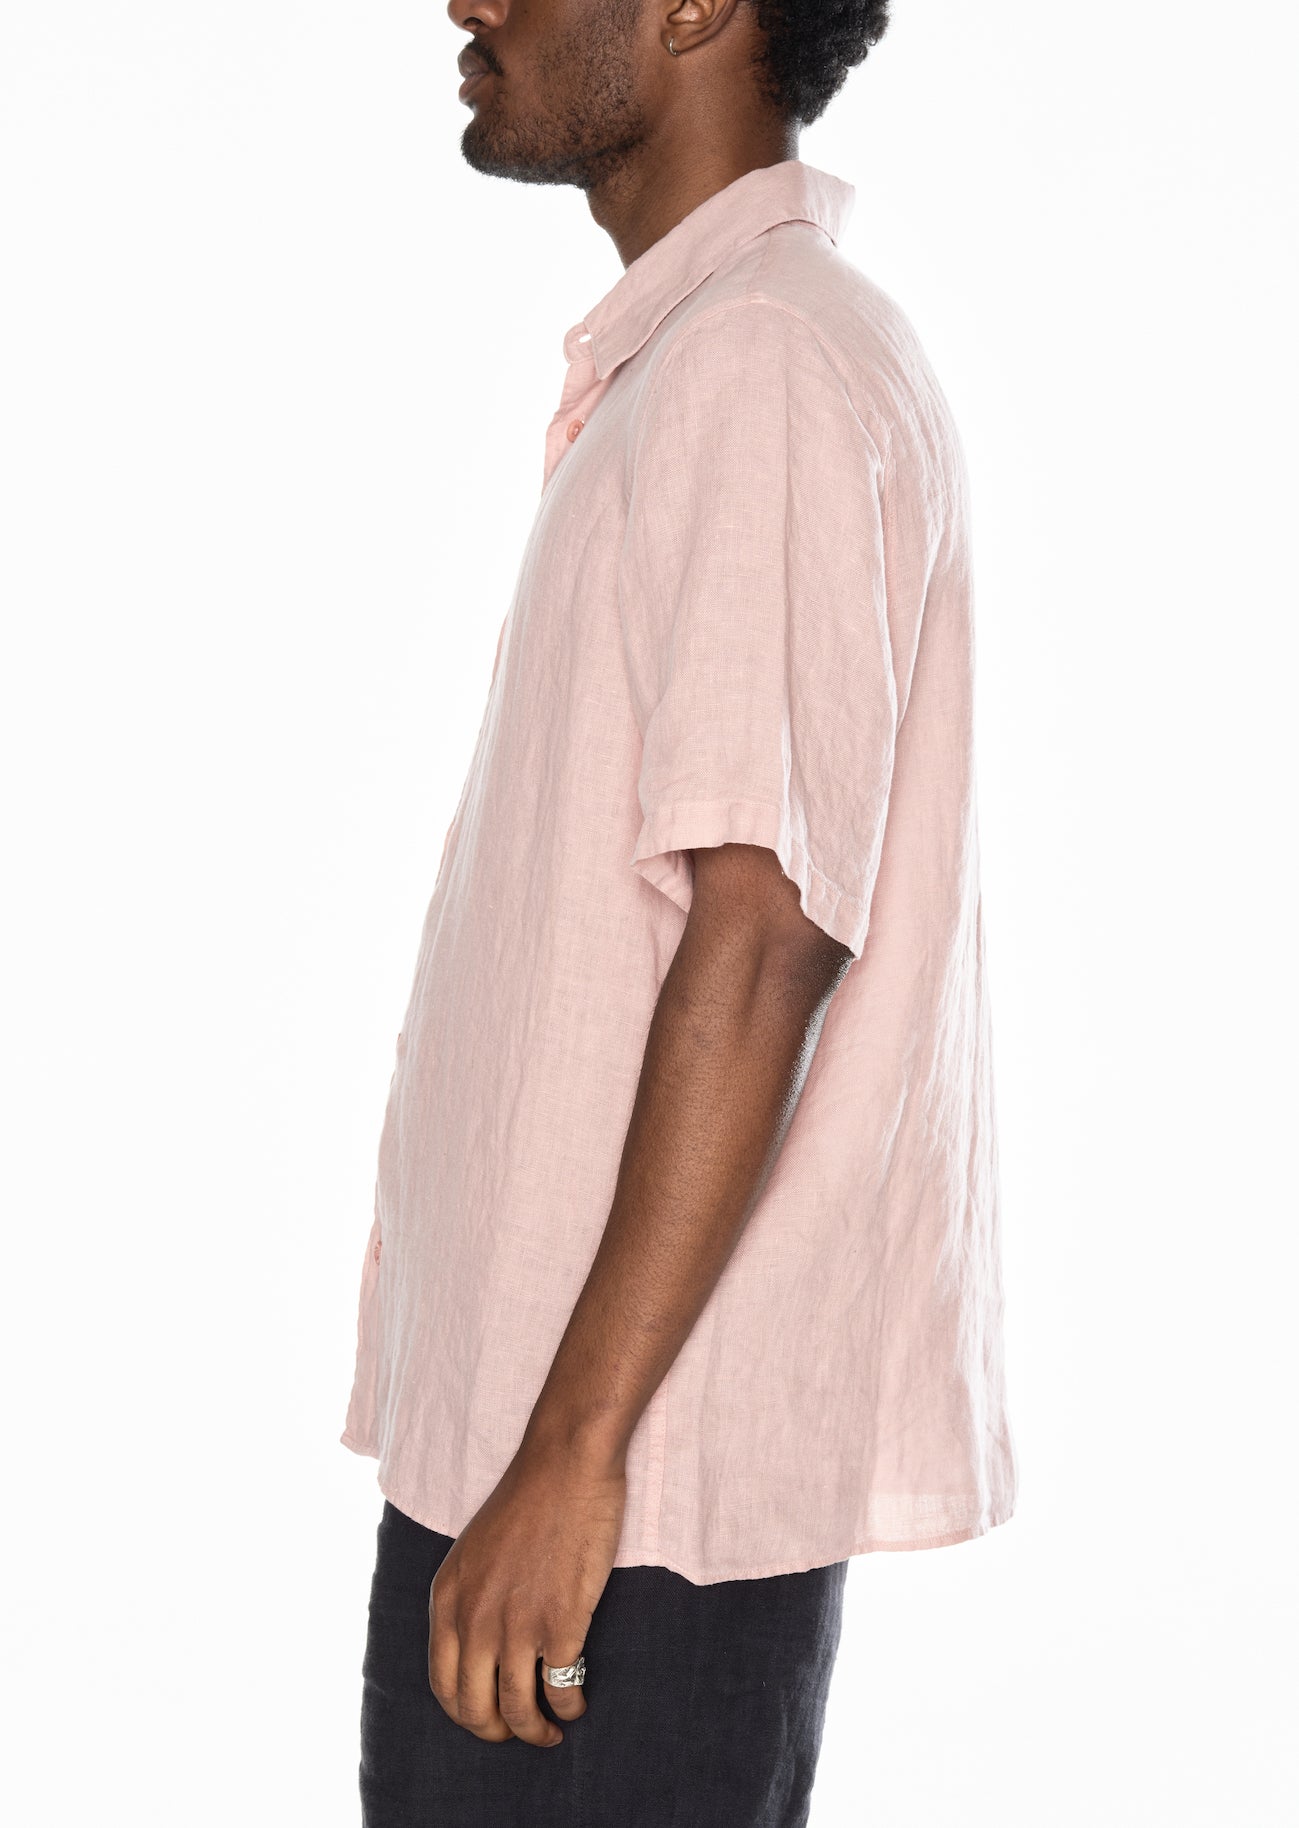 Short Sleeve Linen Shirt in Dusky Pink